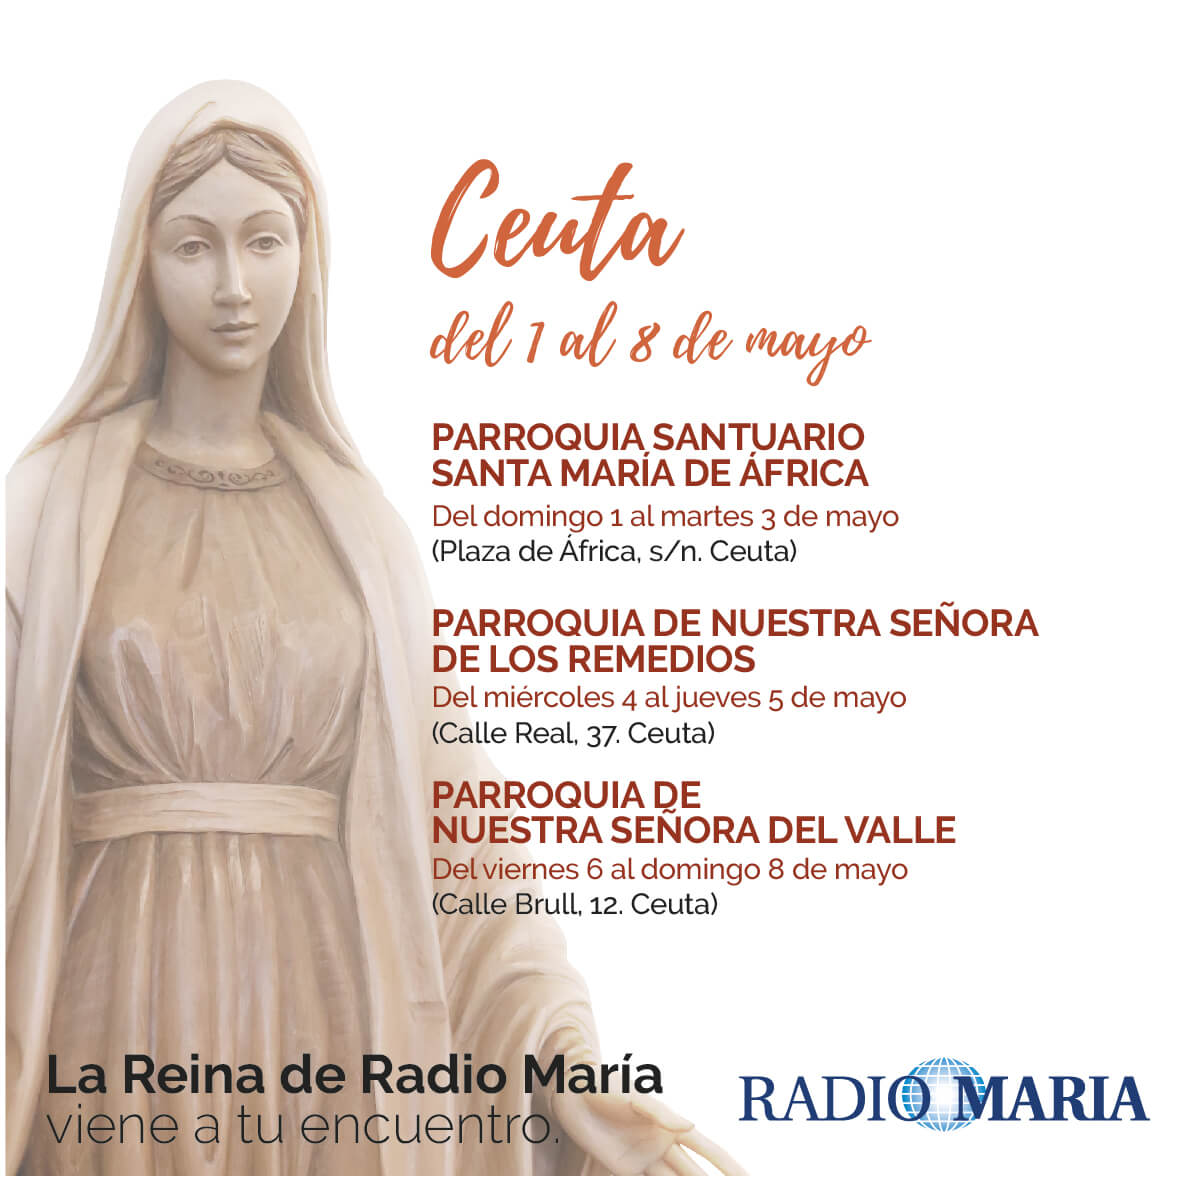 La Reina de Radio María visita Ceuta